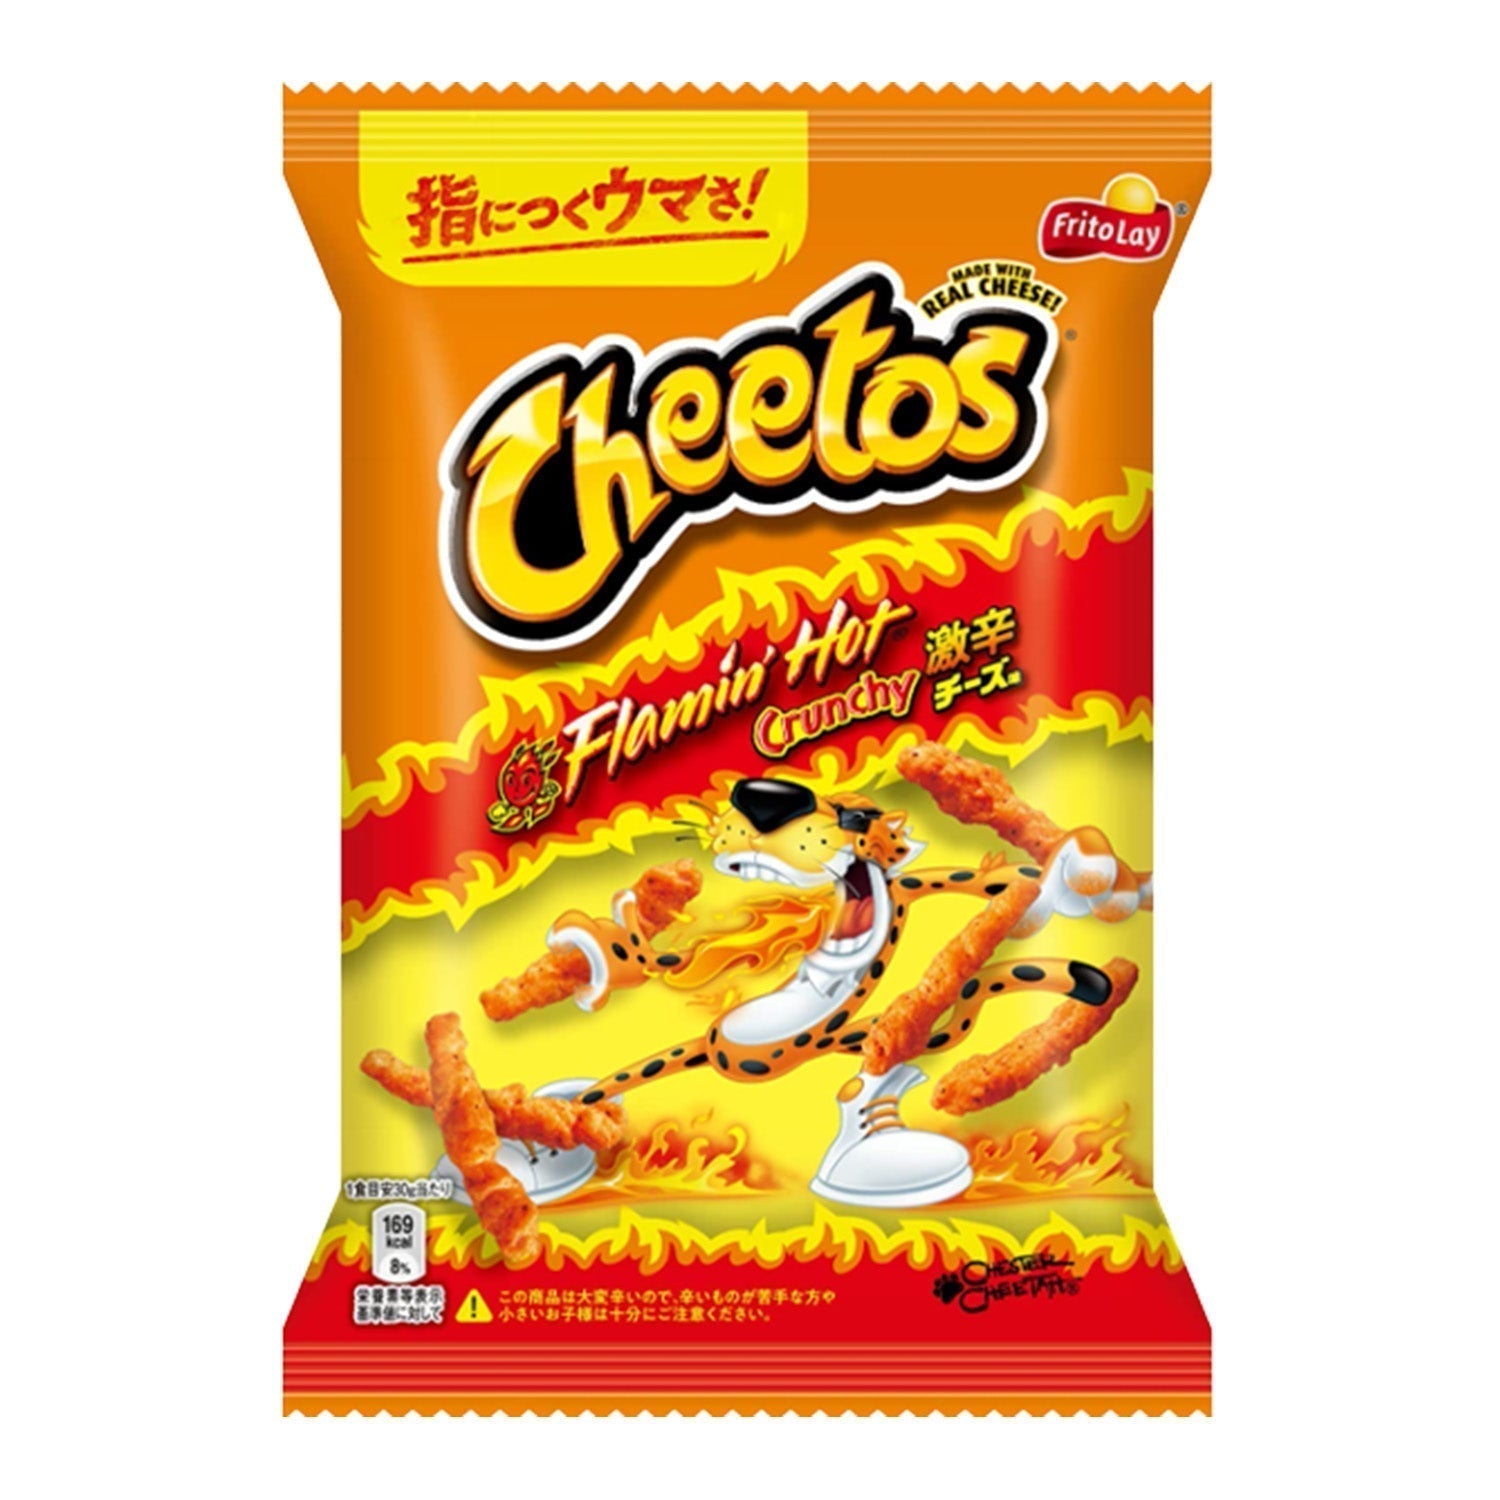 Cheetos Flamin' Hot Crunchy Chips Japan (75 Gram) THT: 01-02-2024 - van Cheetos - Nu voor maar €1.69 bij Mijn Snoepgoed